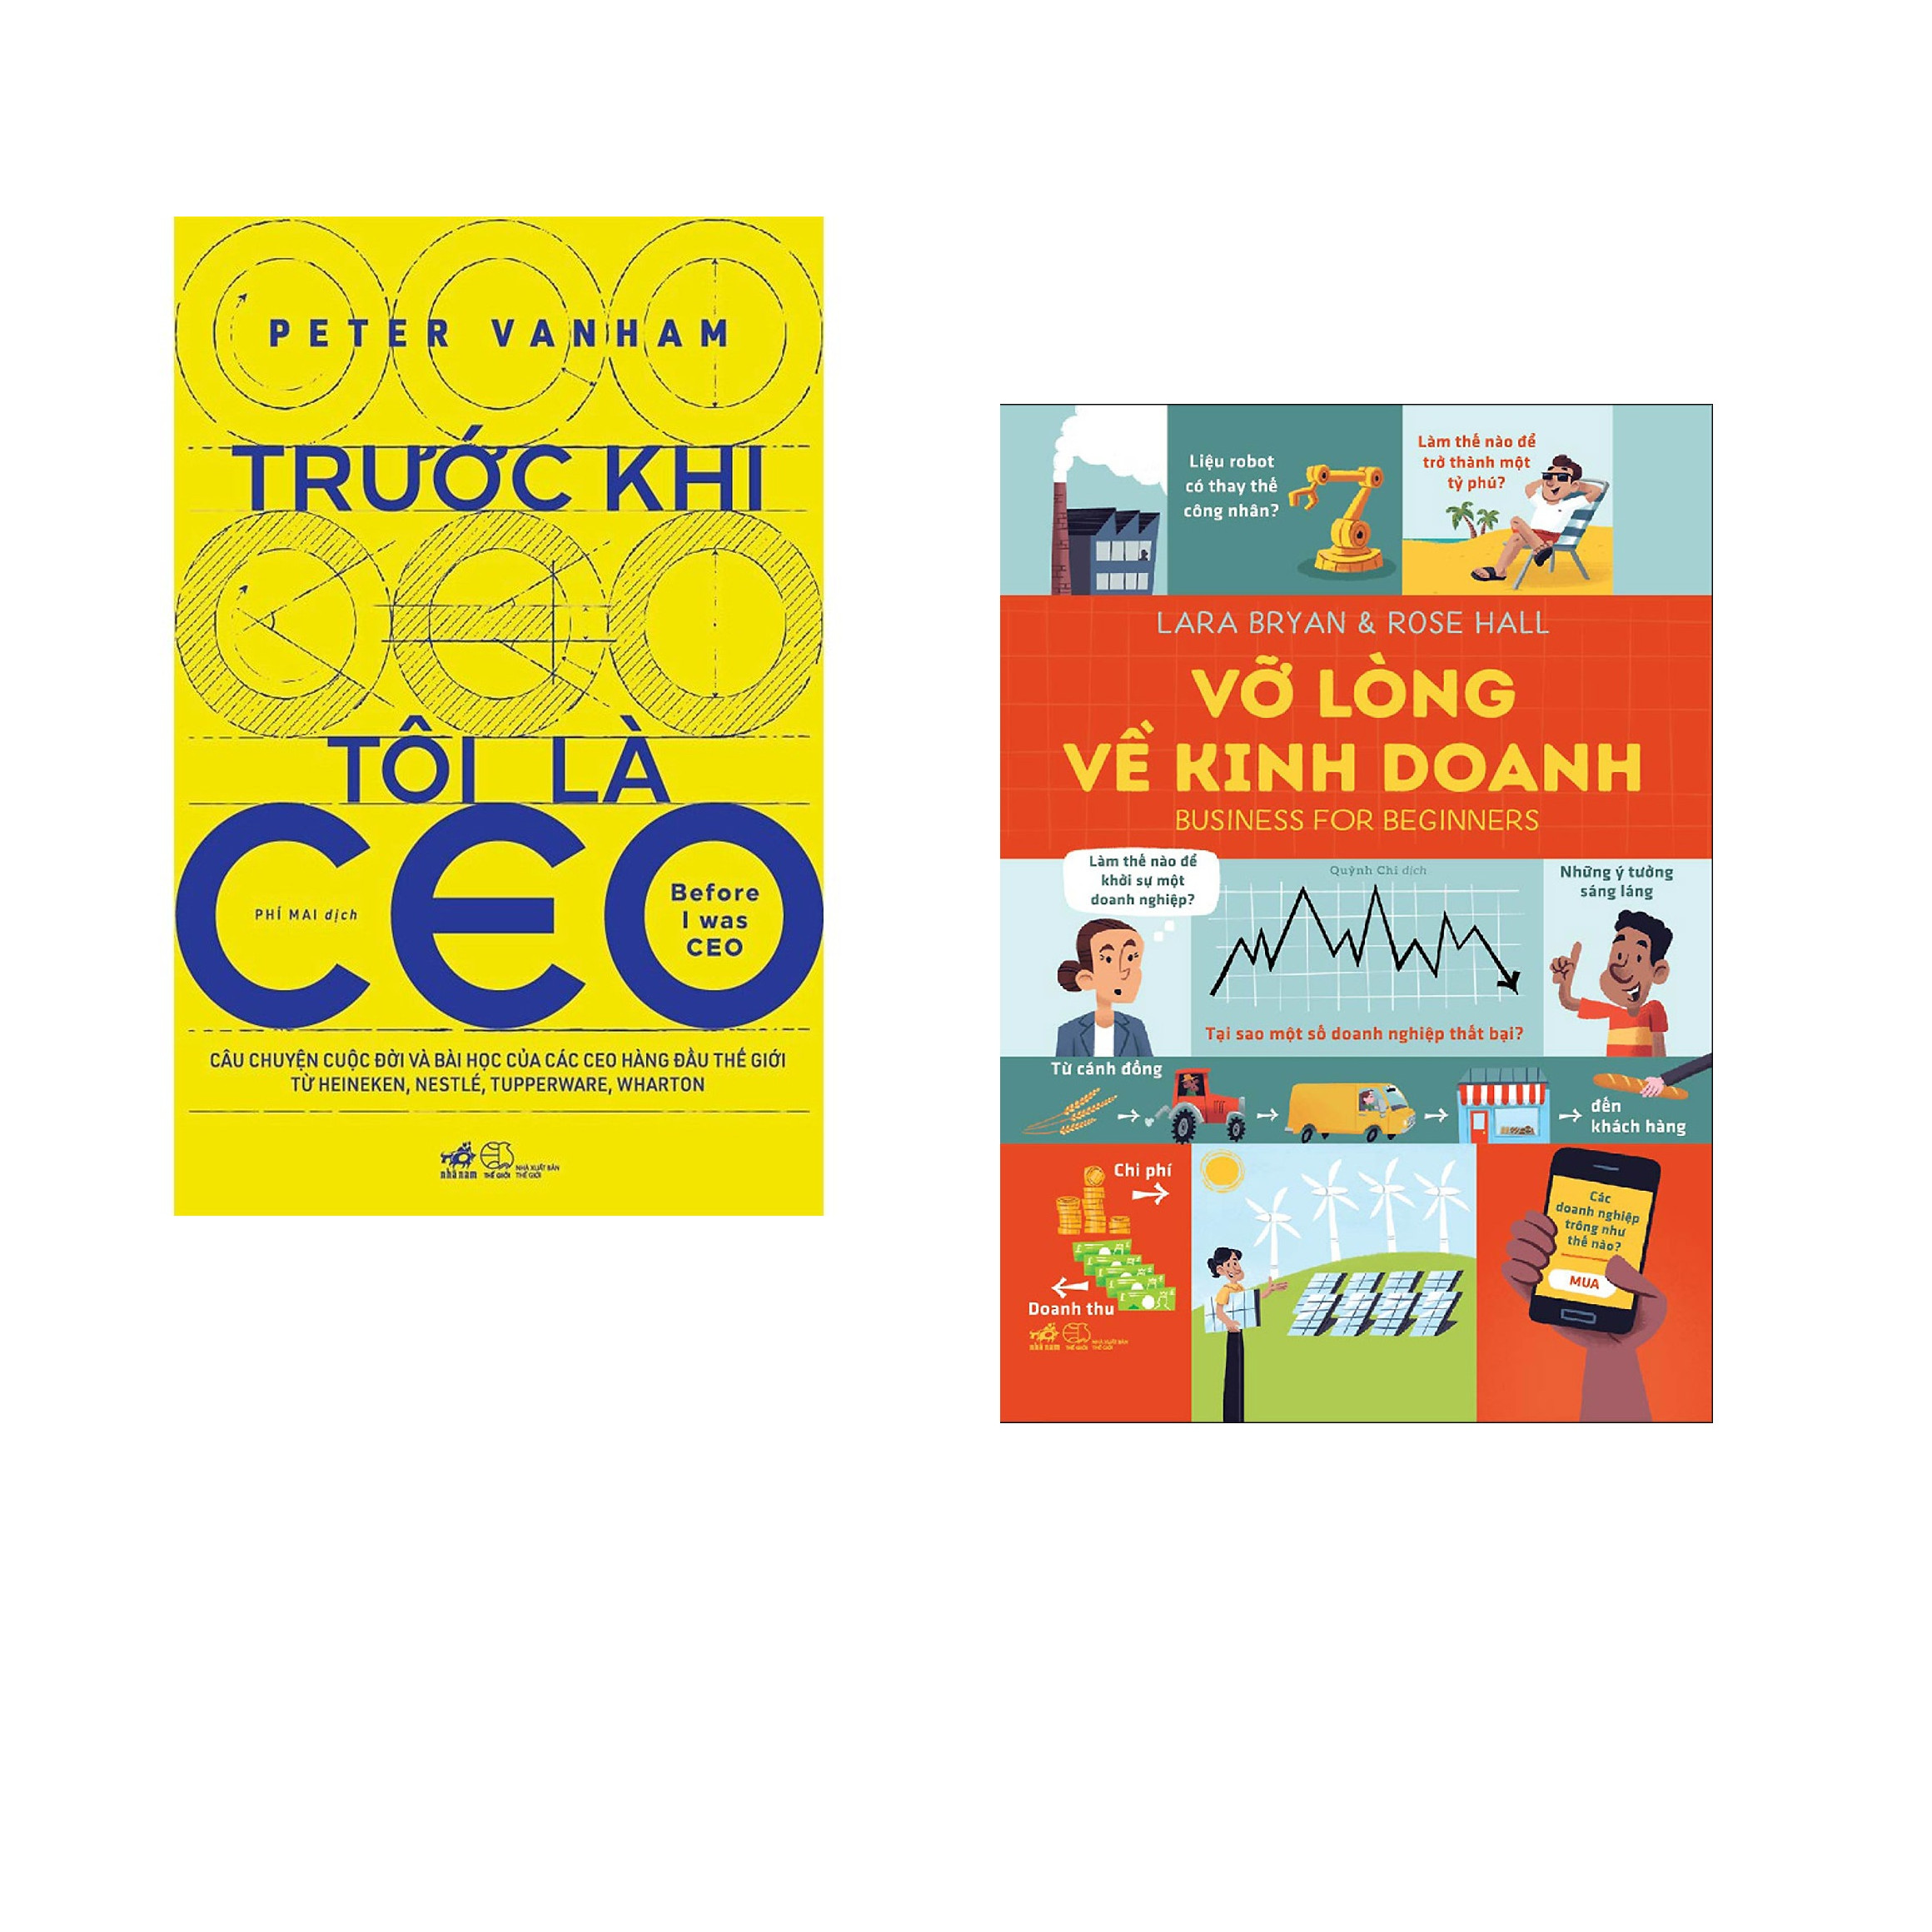 Combo 2 cuốn sách: Trước khi tôi là CEO + Vỡ lòng về kinh doanh